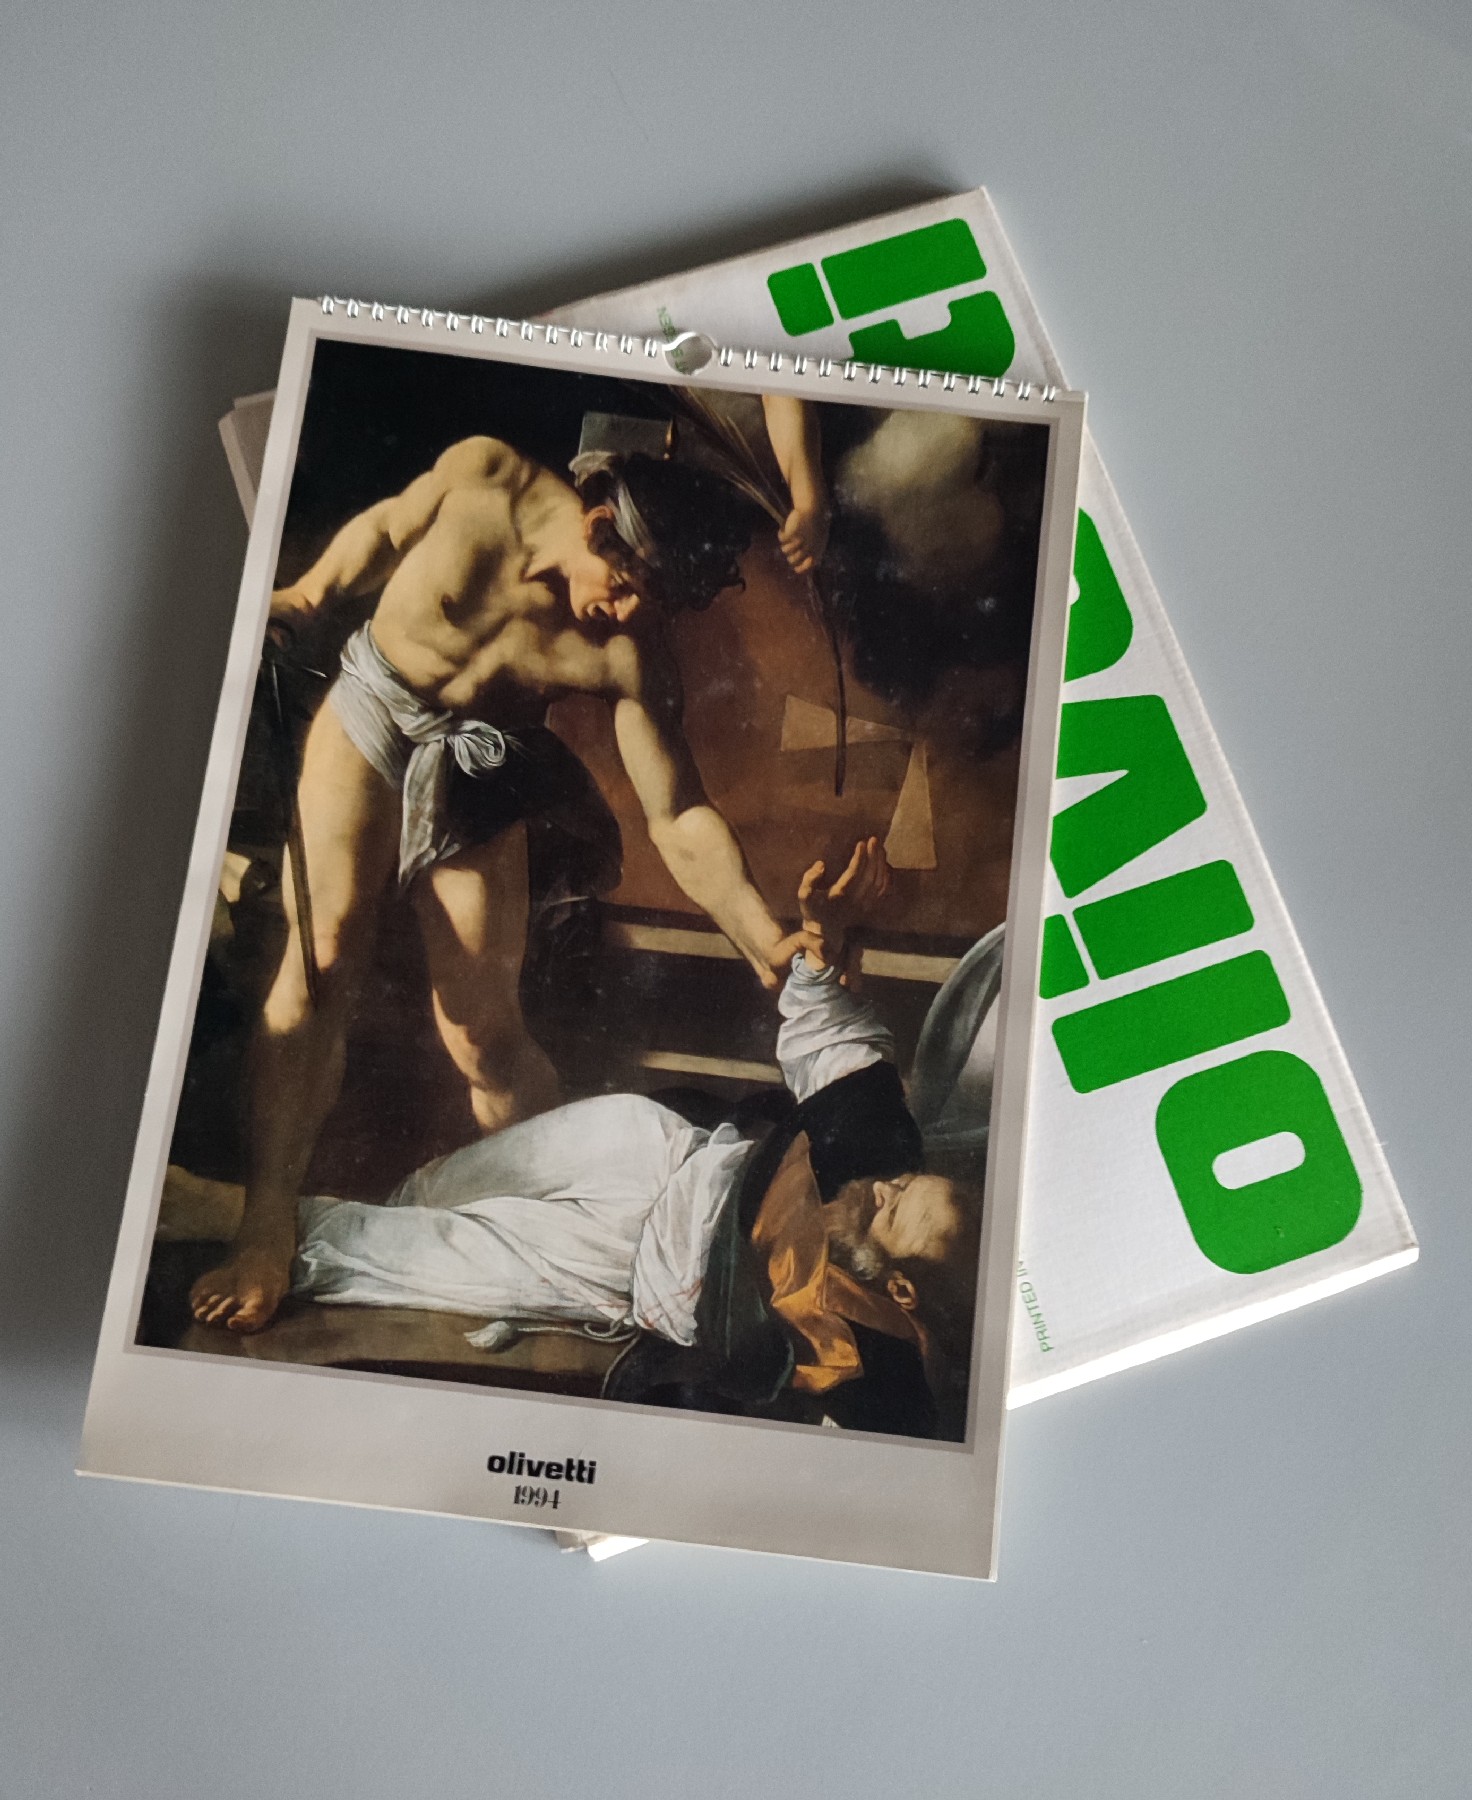 La giovinezza di Caravaggio (Caravaggio’s youth) – Olivetti calendar